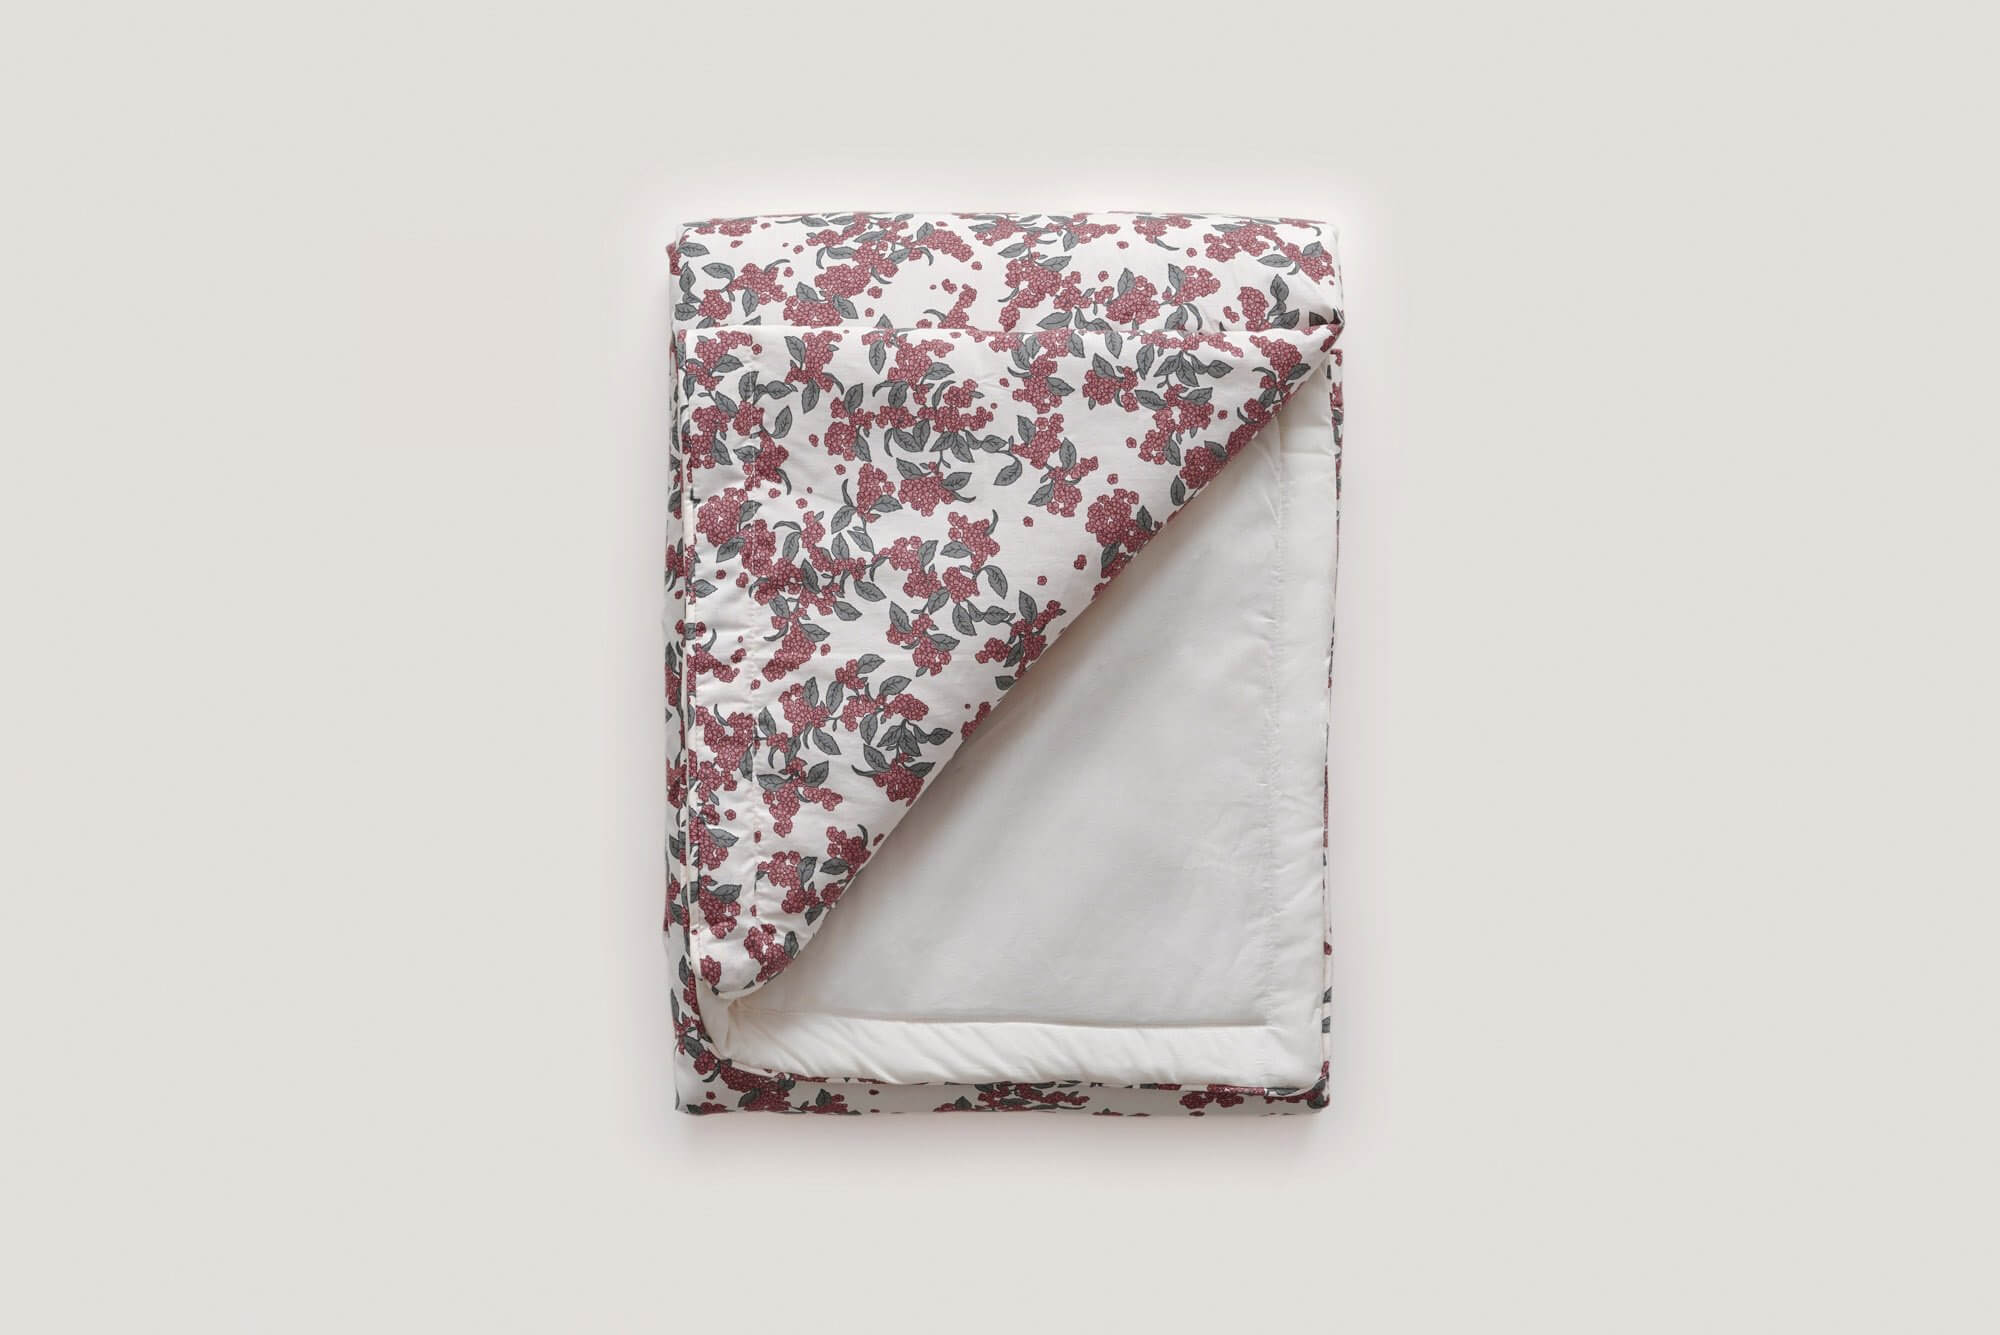 Cherrie Blossom Filled Blanket